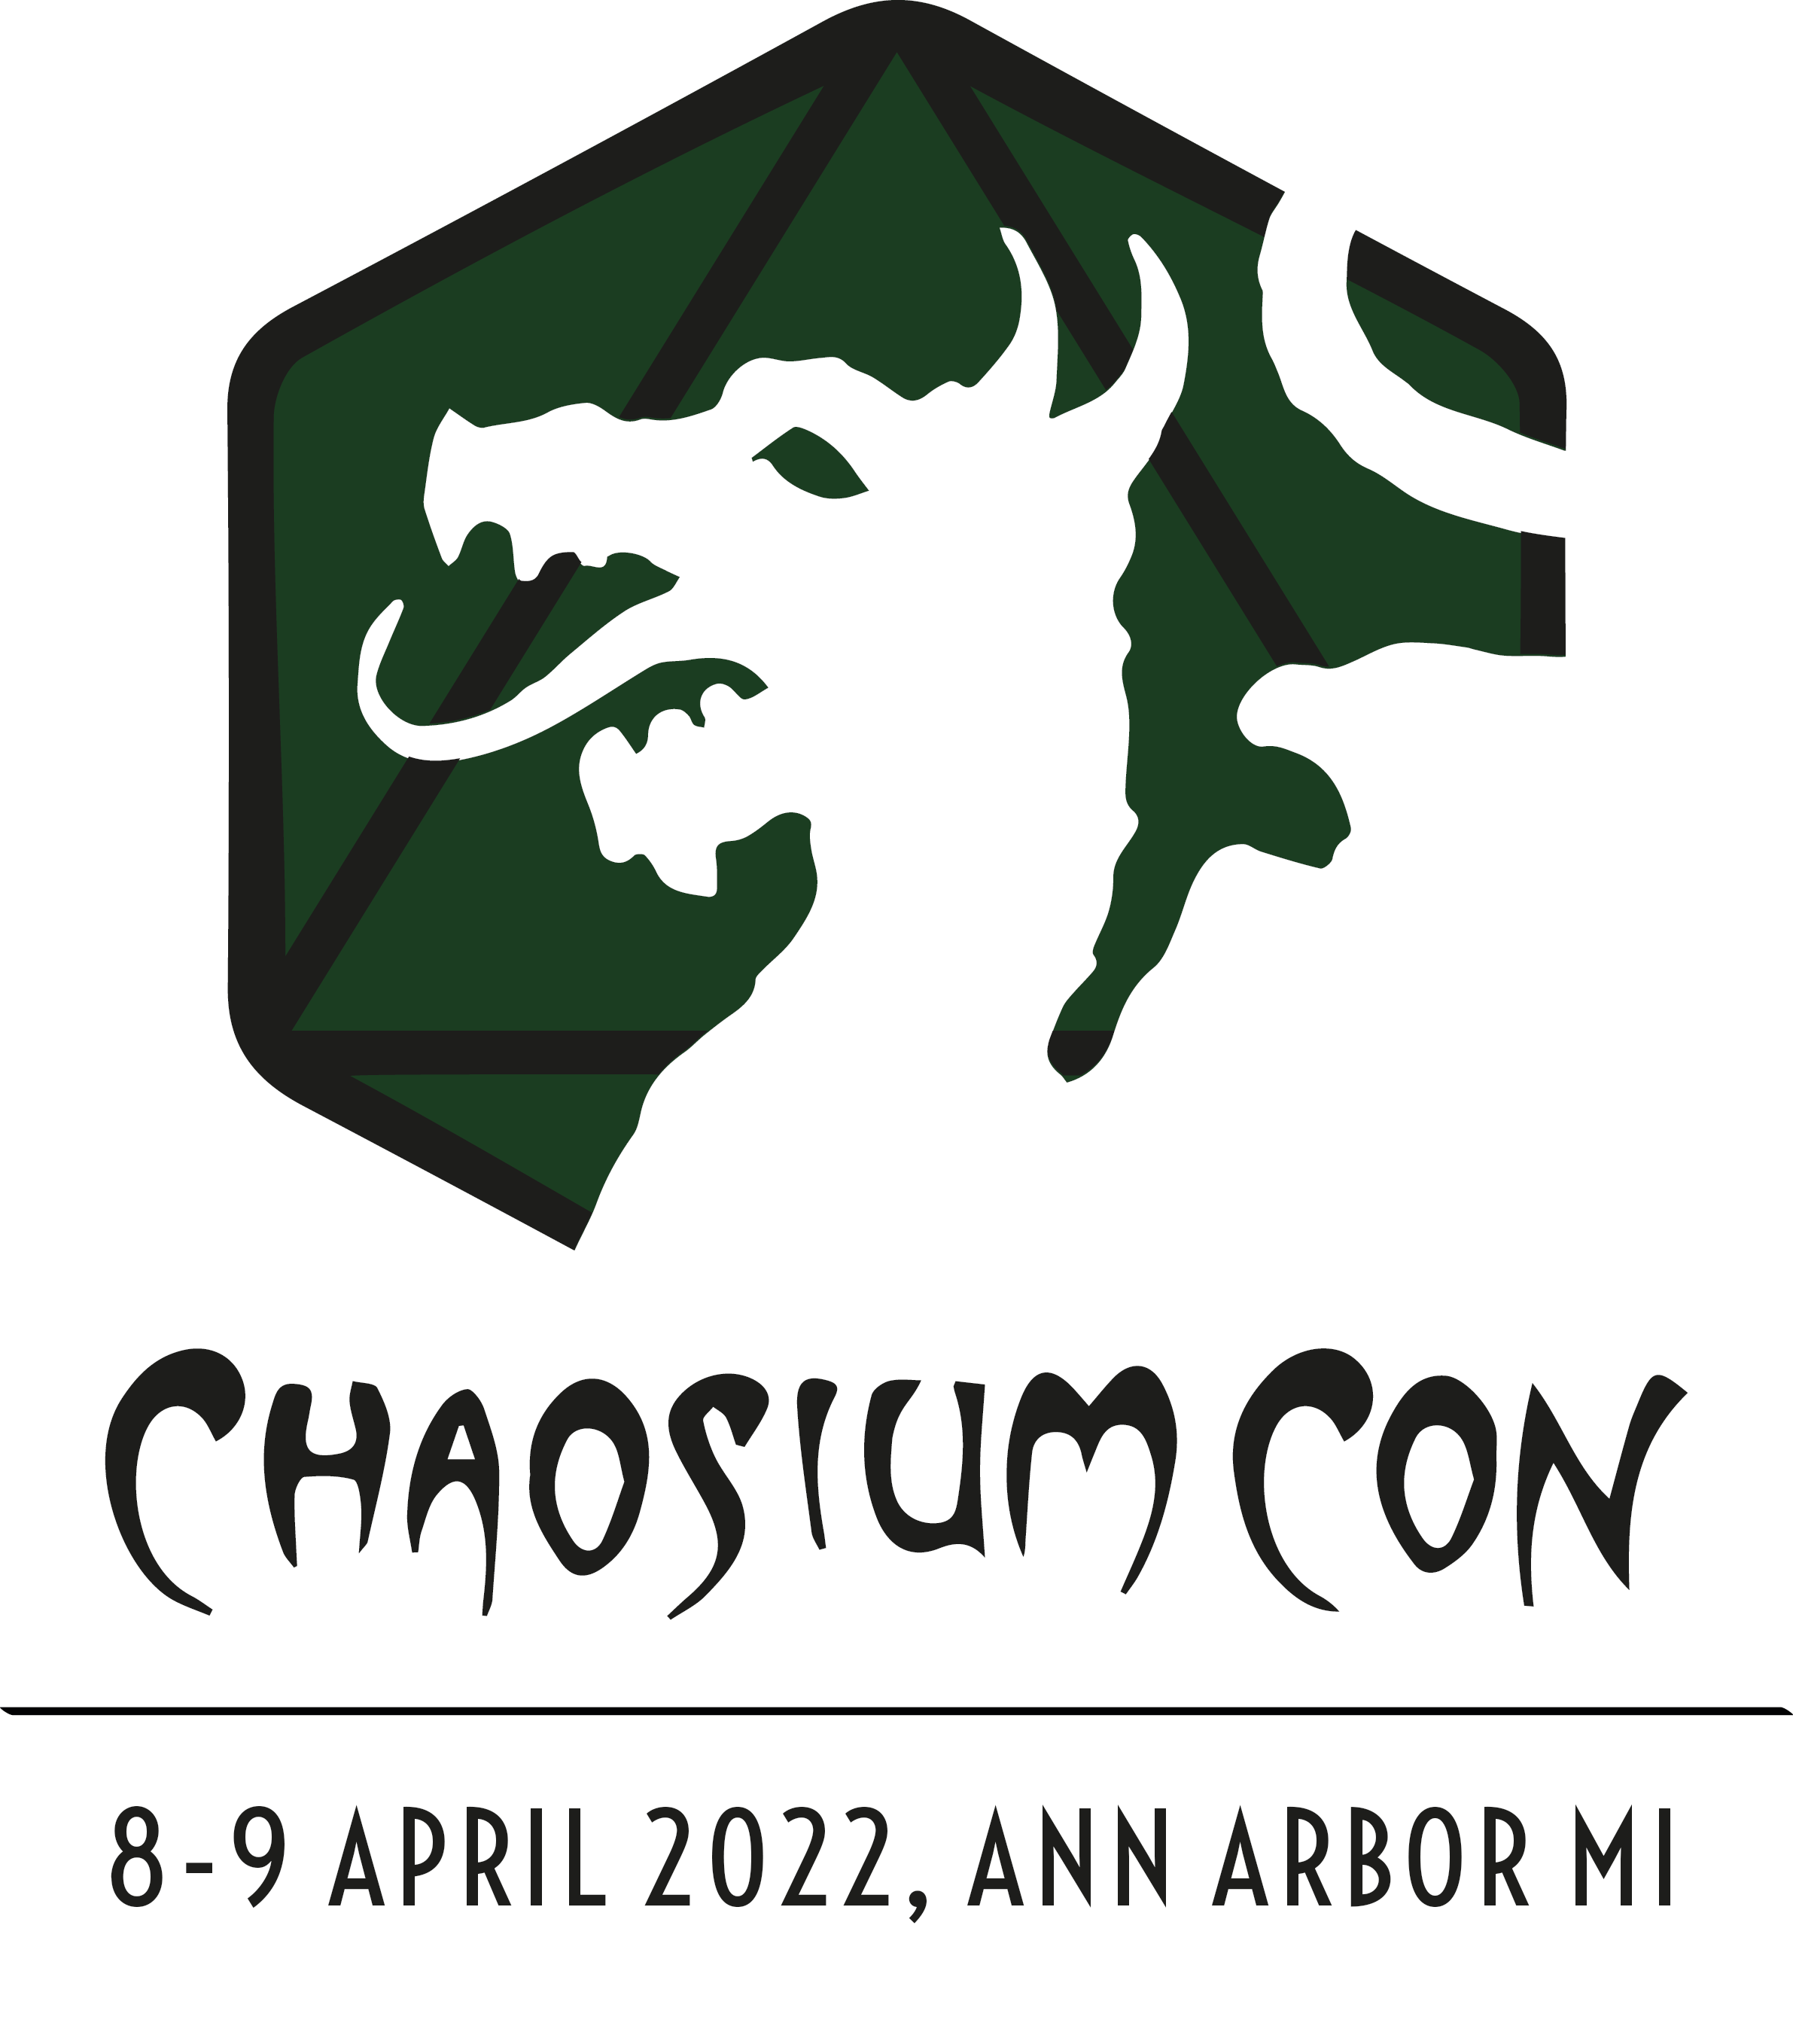 chaosium-con-logo.png